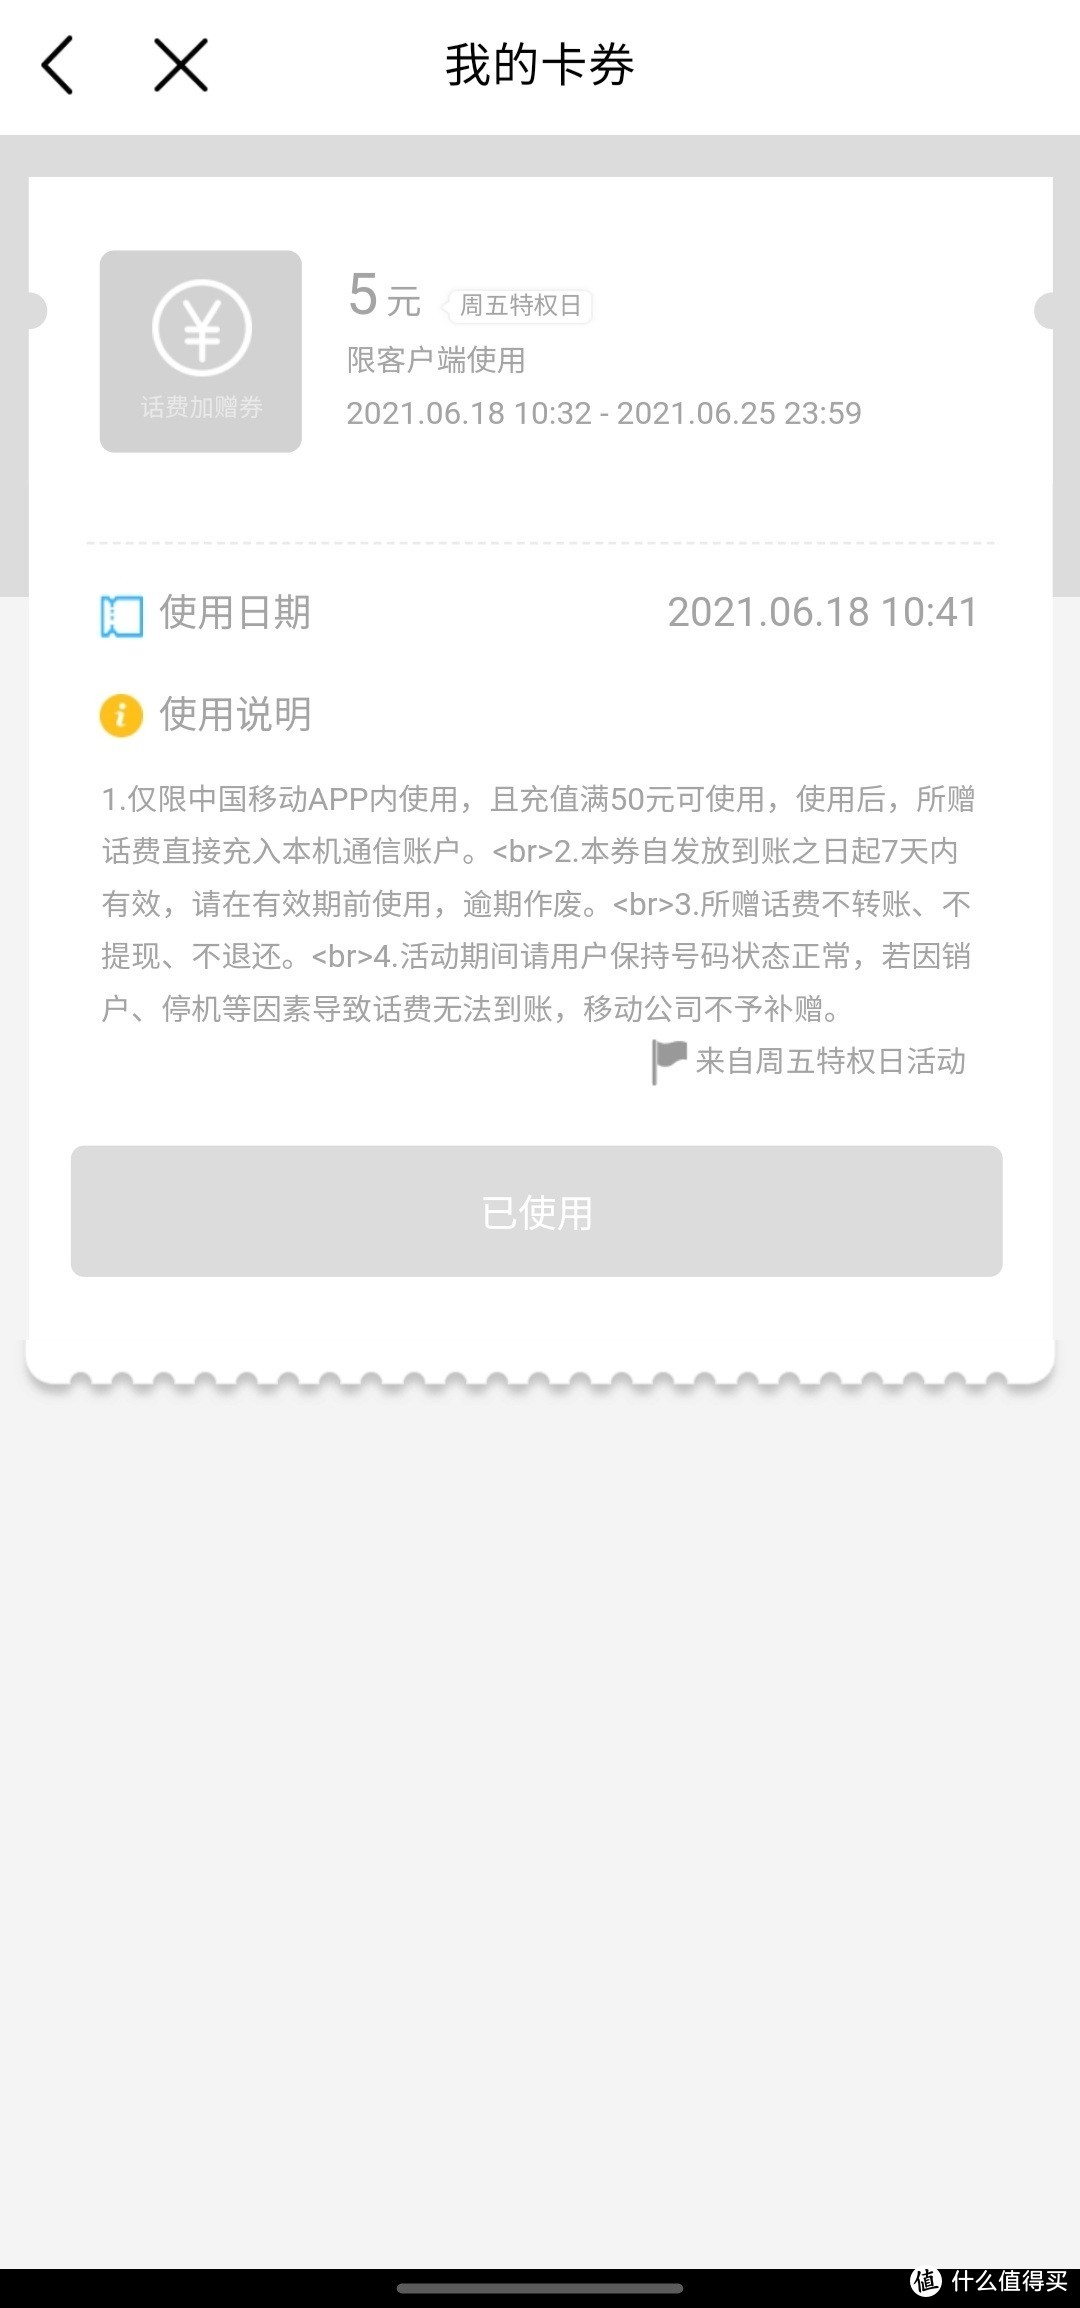 中国移动手机端周五特权券满50送5元